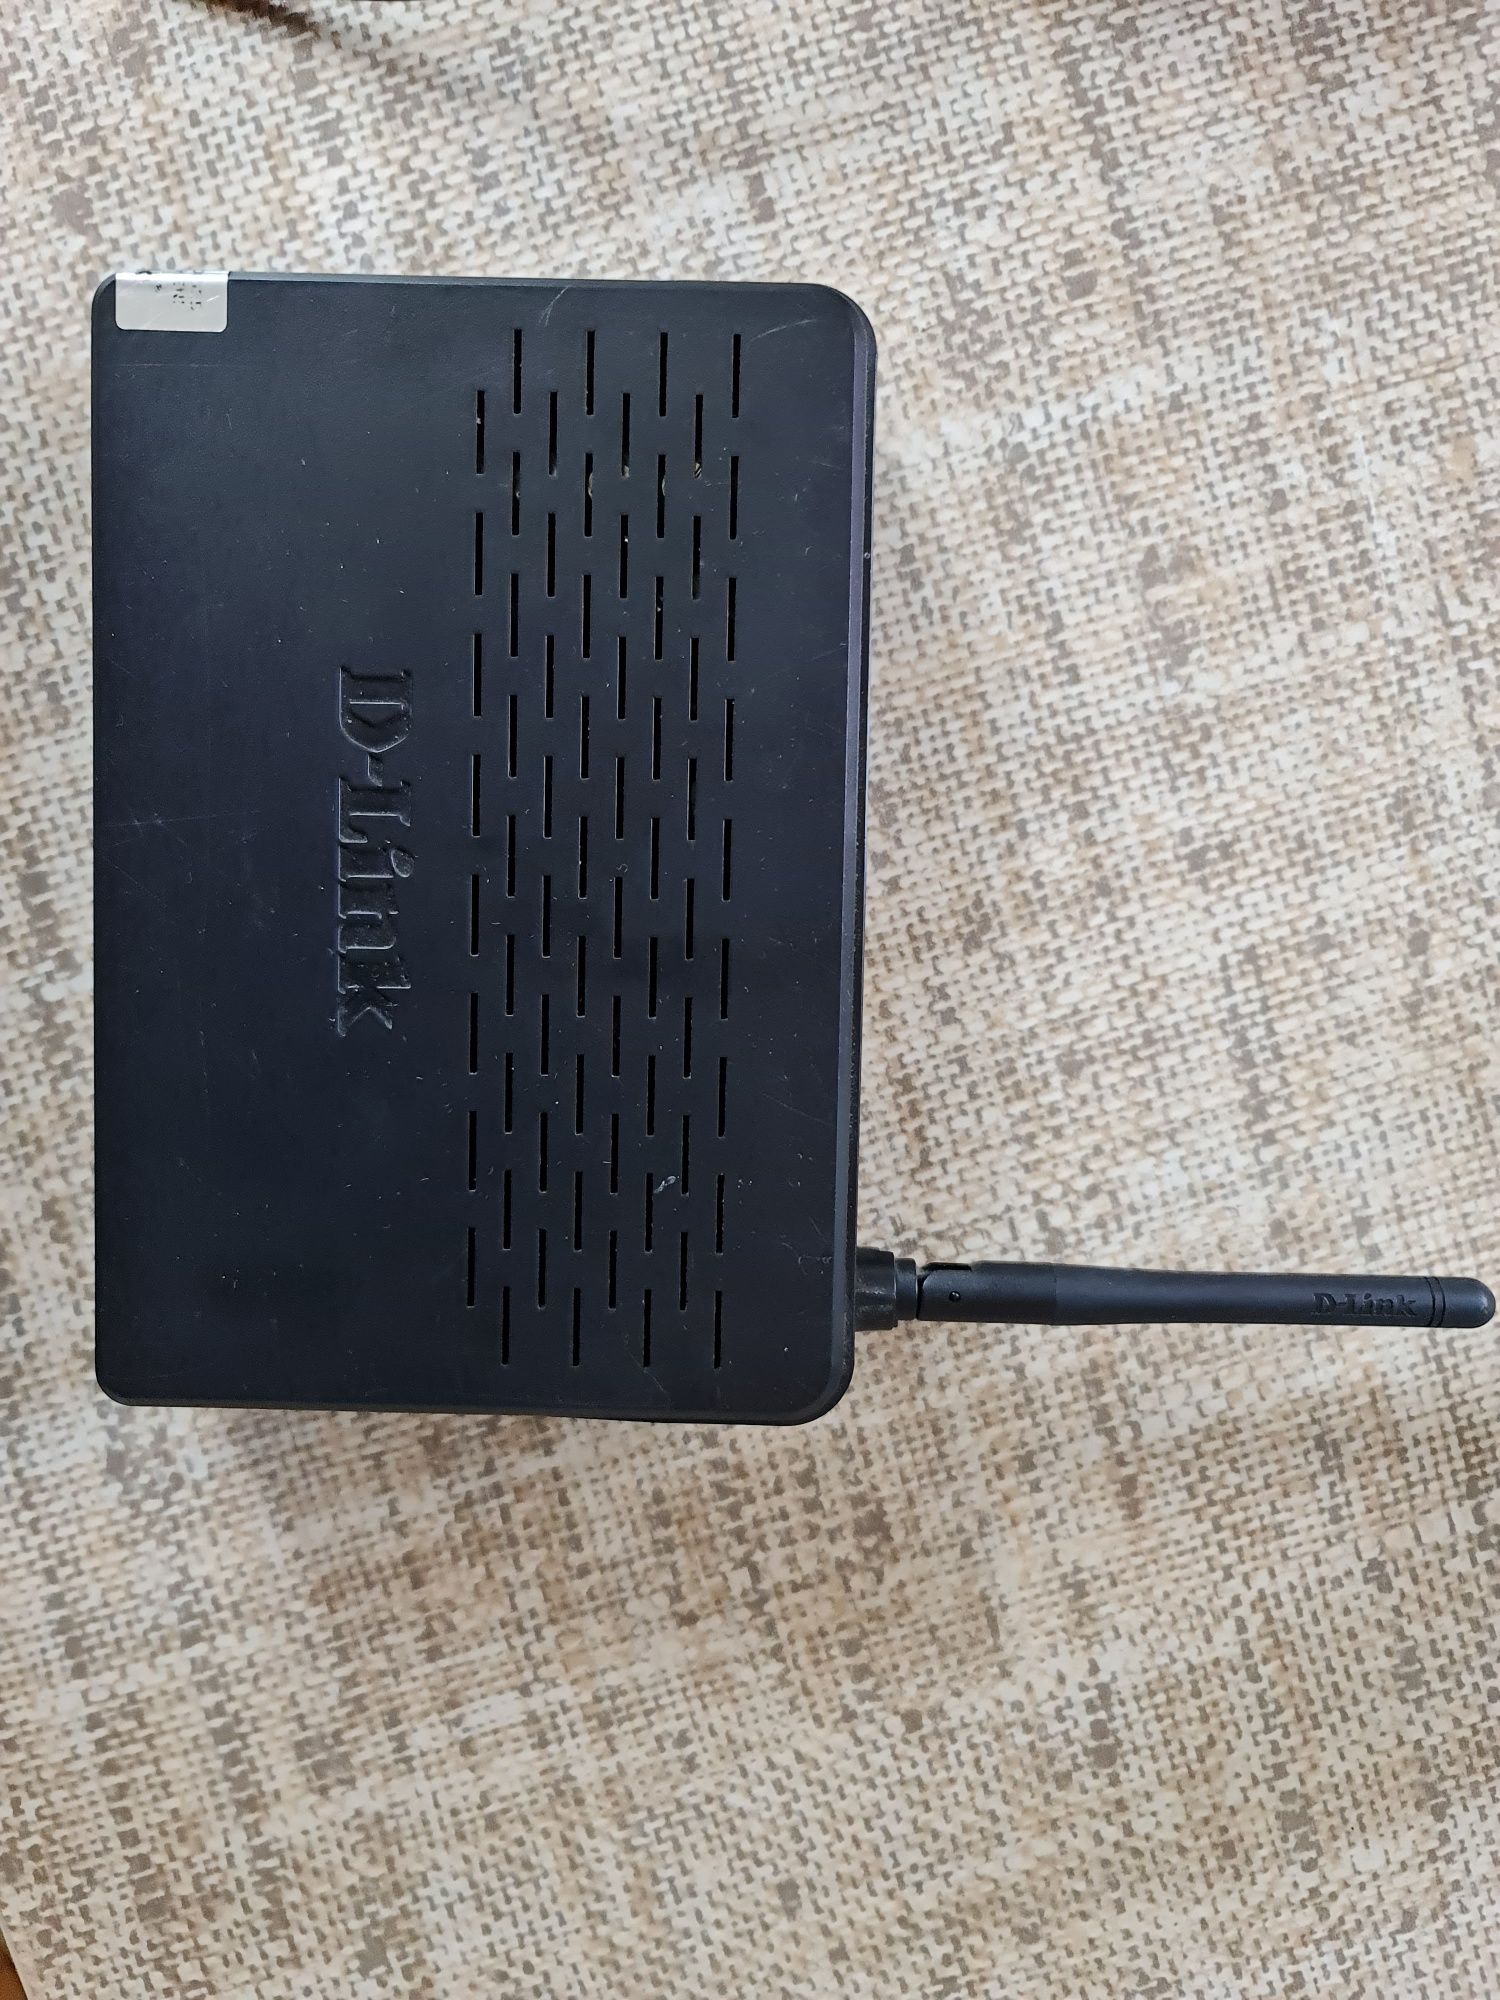 Роутер ADSL  D-Link DSL-2640U без зарядного устройства в рабочем состо